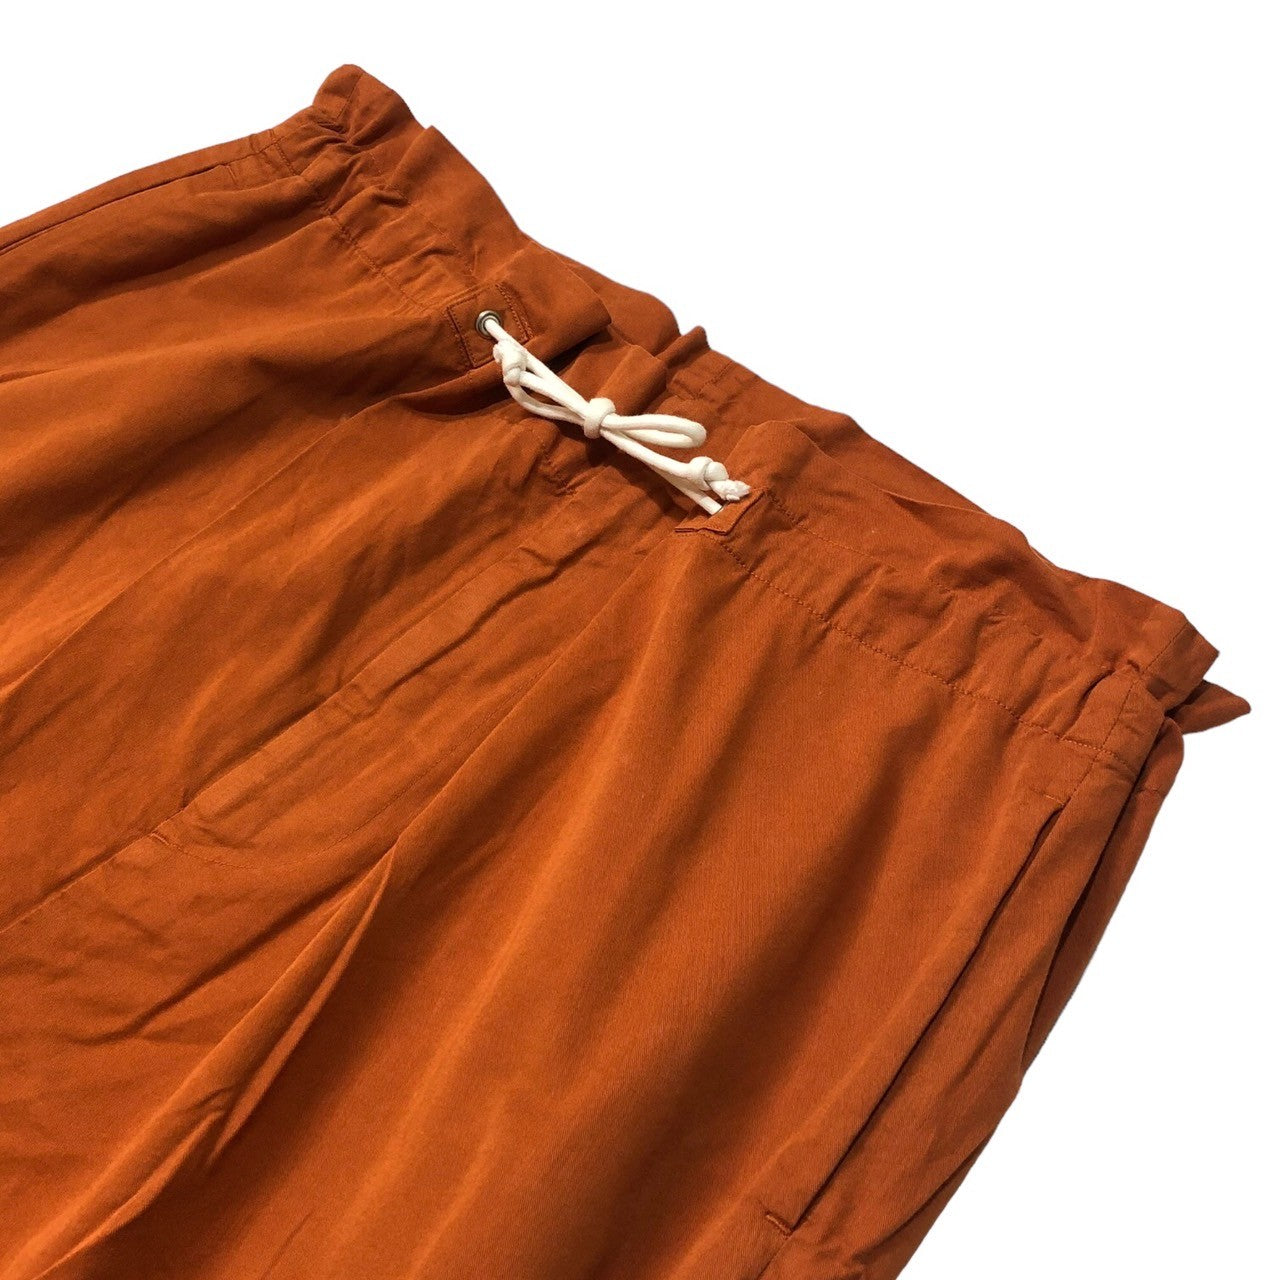 Dulcamara(ドゥルカマラ) Cotton poly product dyed wide easy pants コットンポリ 製品染め ワイド イージーパンツ SIZE 1(S) オレンジ